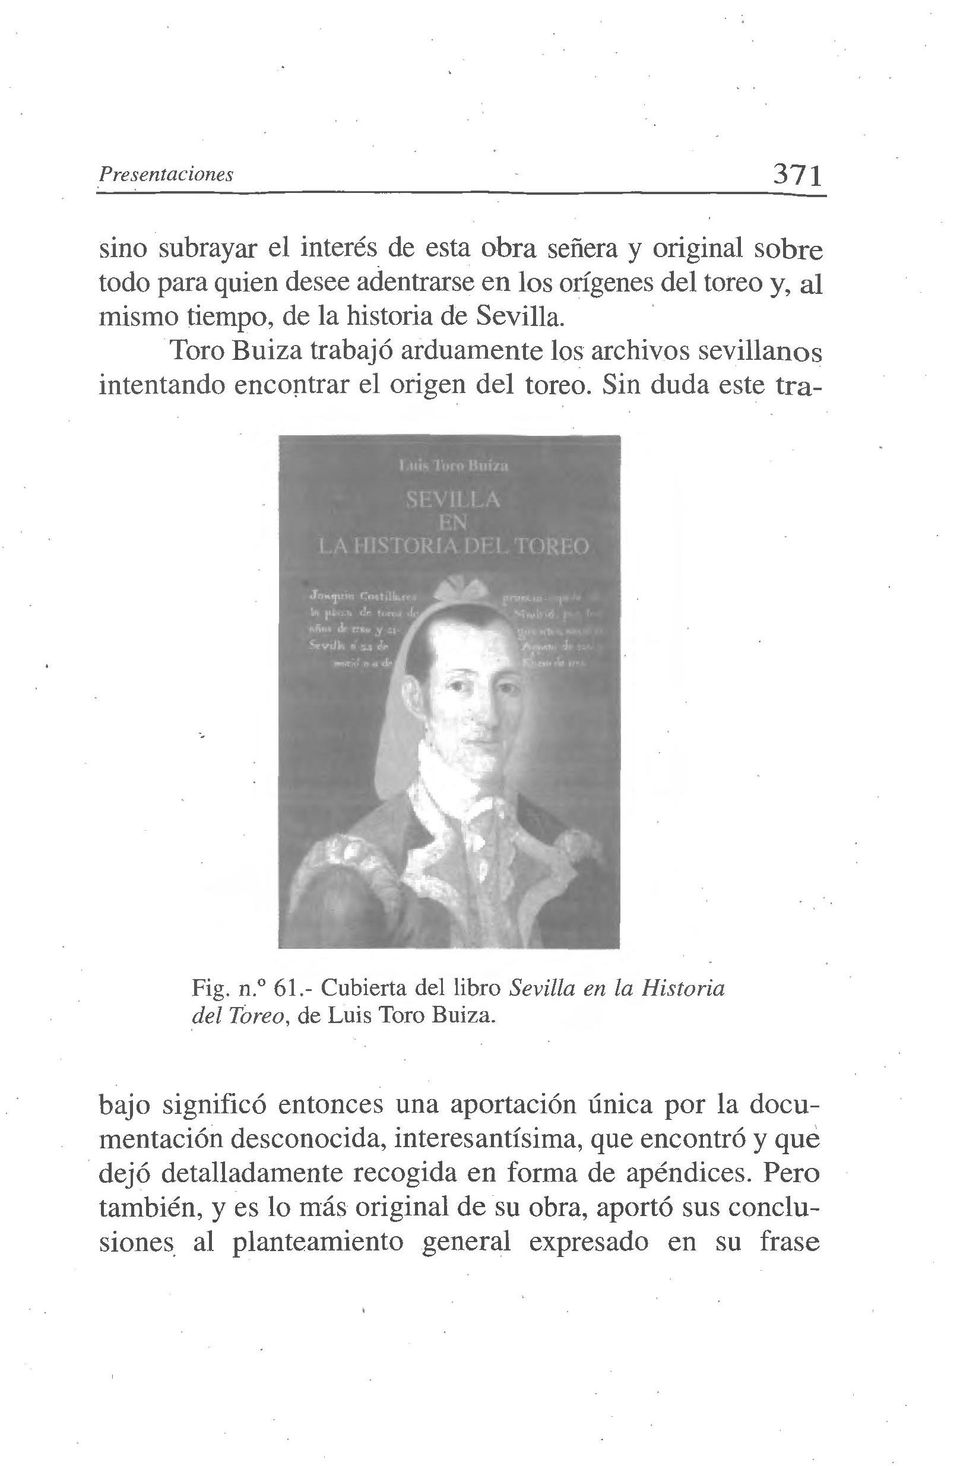 - Cubierta del libro Sevilla en la Historia del Toreo, de Luis Toro Buiza.